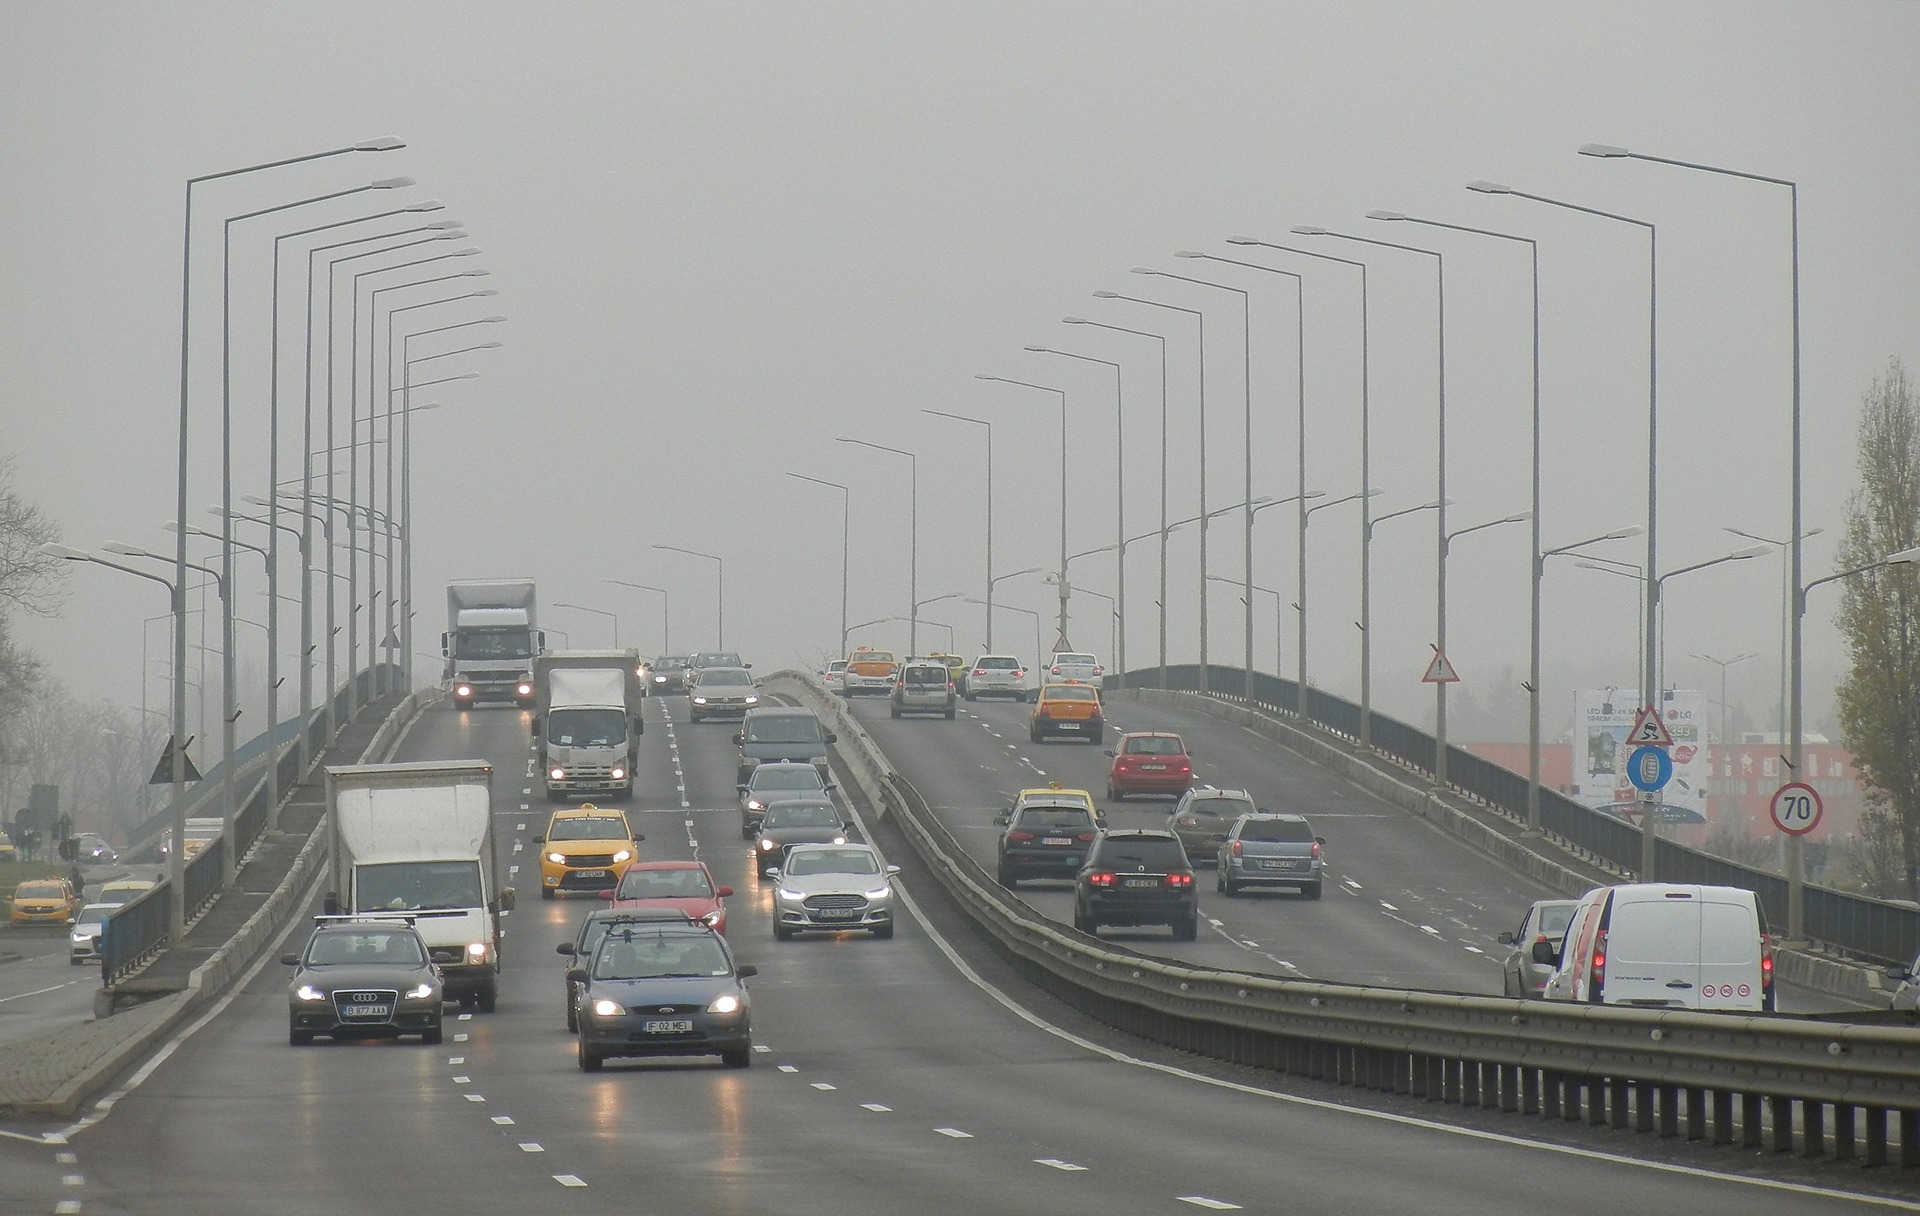 Post precedente: Emergenza smog: il report di Legambiente